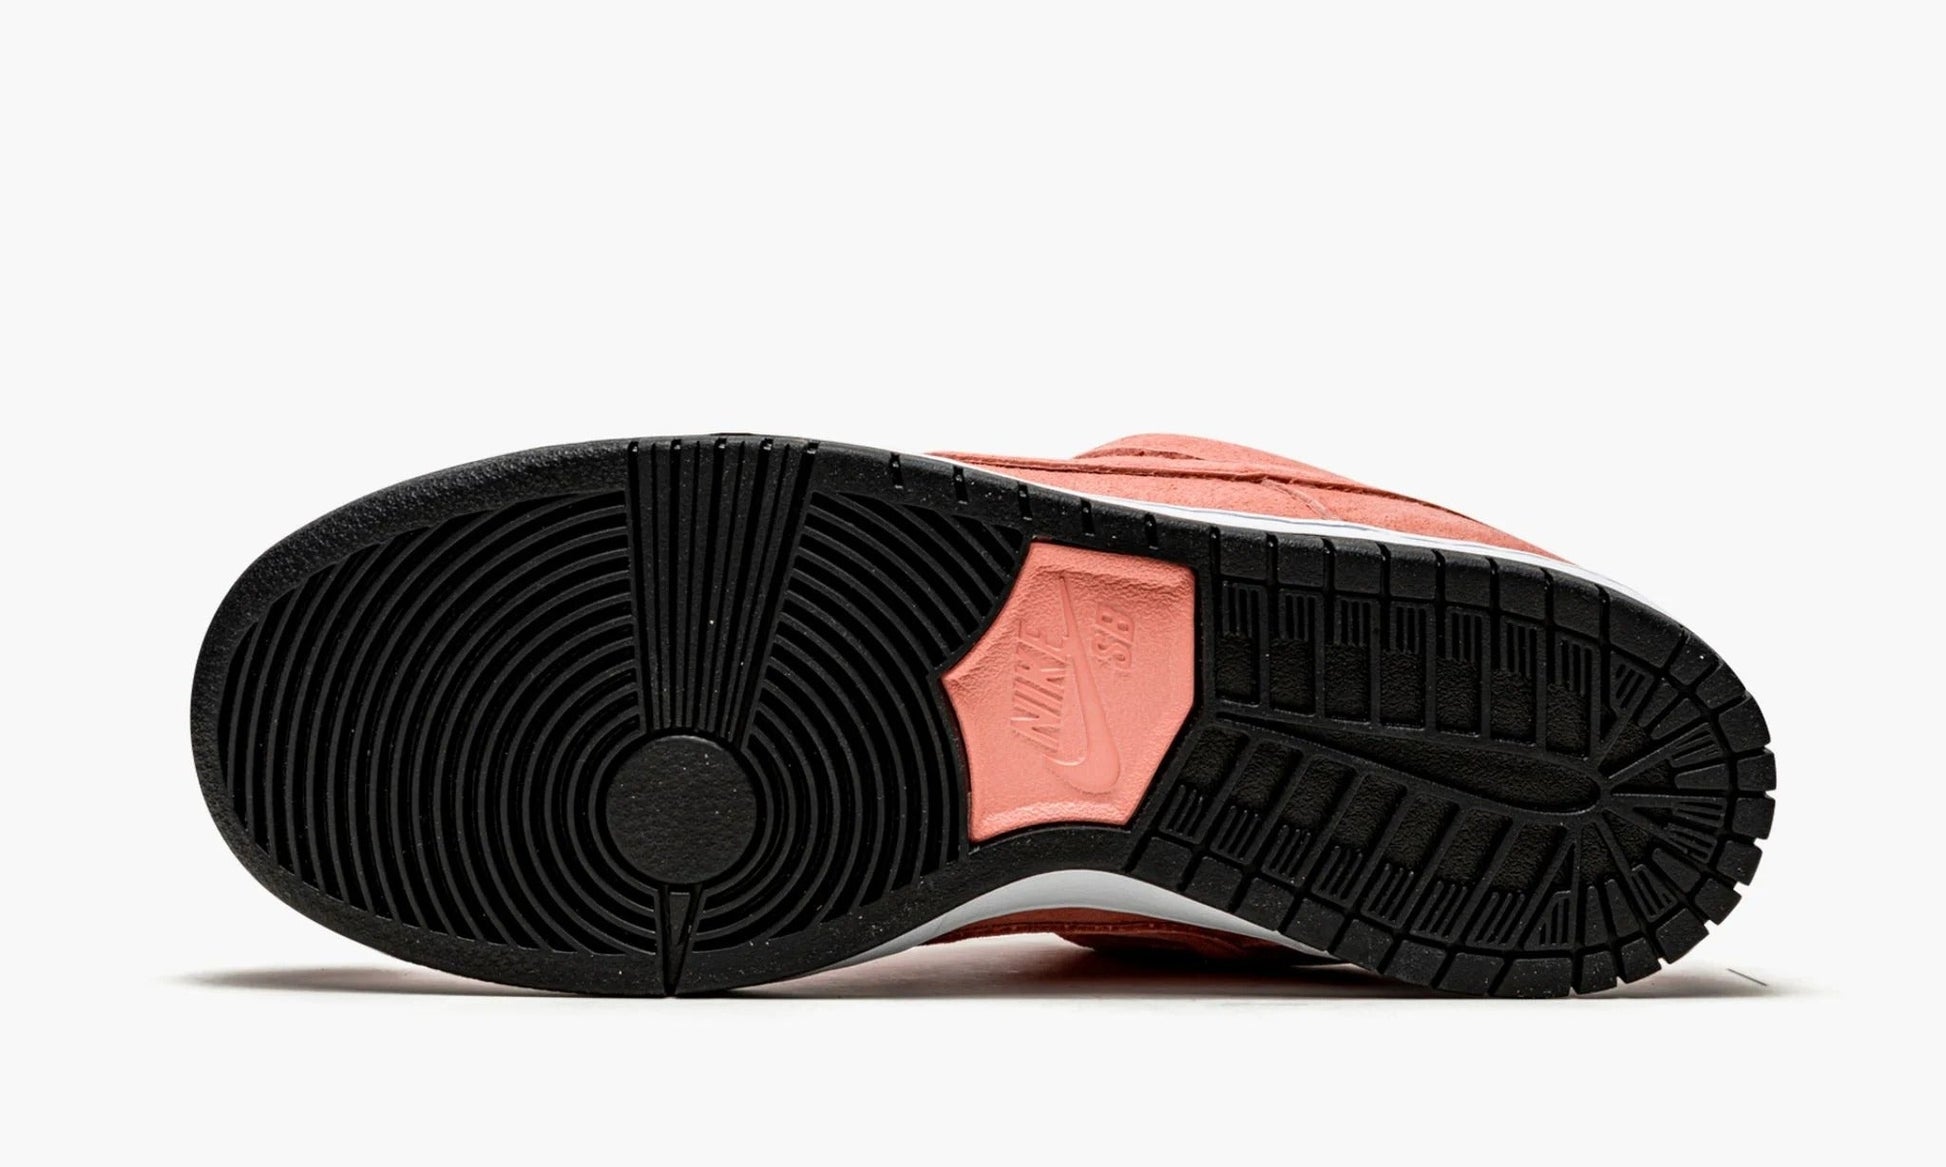 Nike Dunk SB Low Pink Pig - CV1655 600 | The Sortage